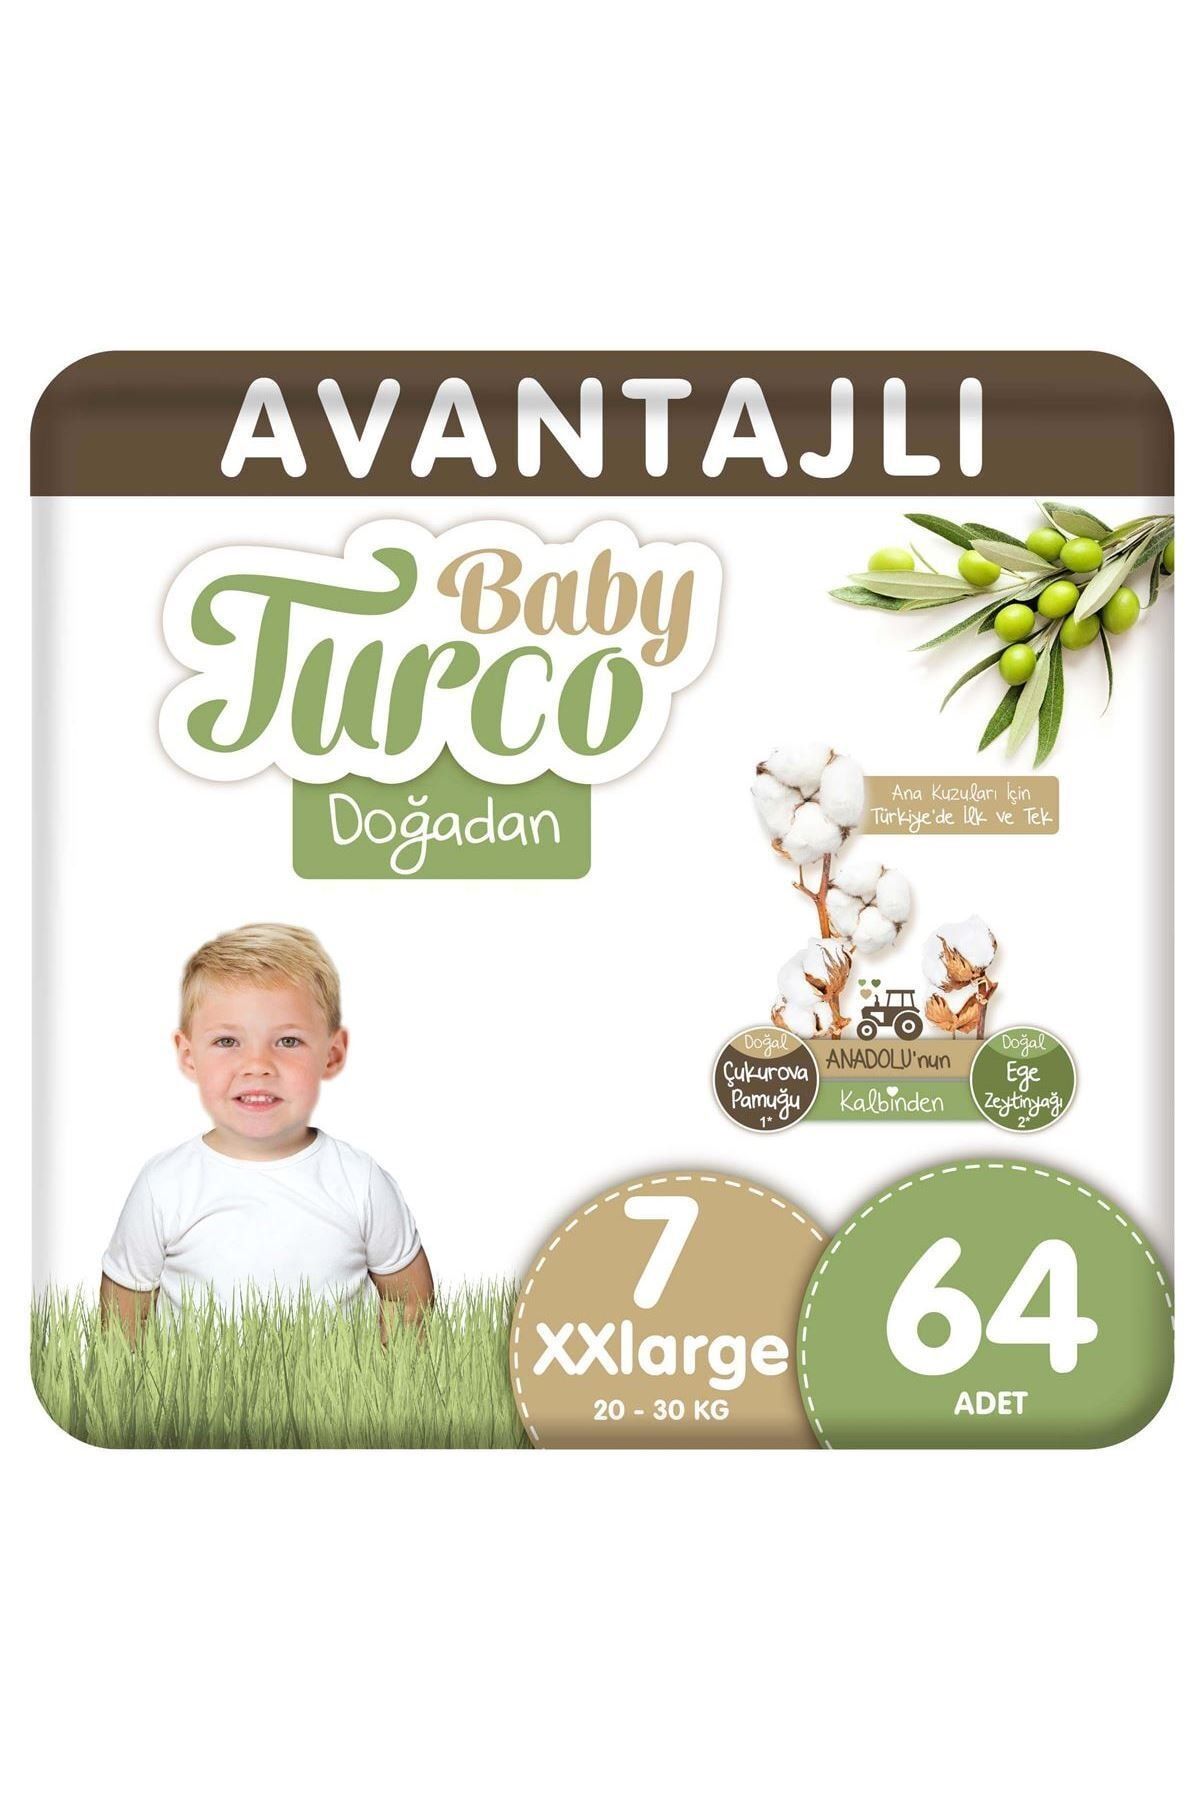 Baby Turco Doğadan Avantajlı Bebek Bezi 7 Numara Xxlarge 64 Adet